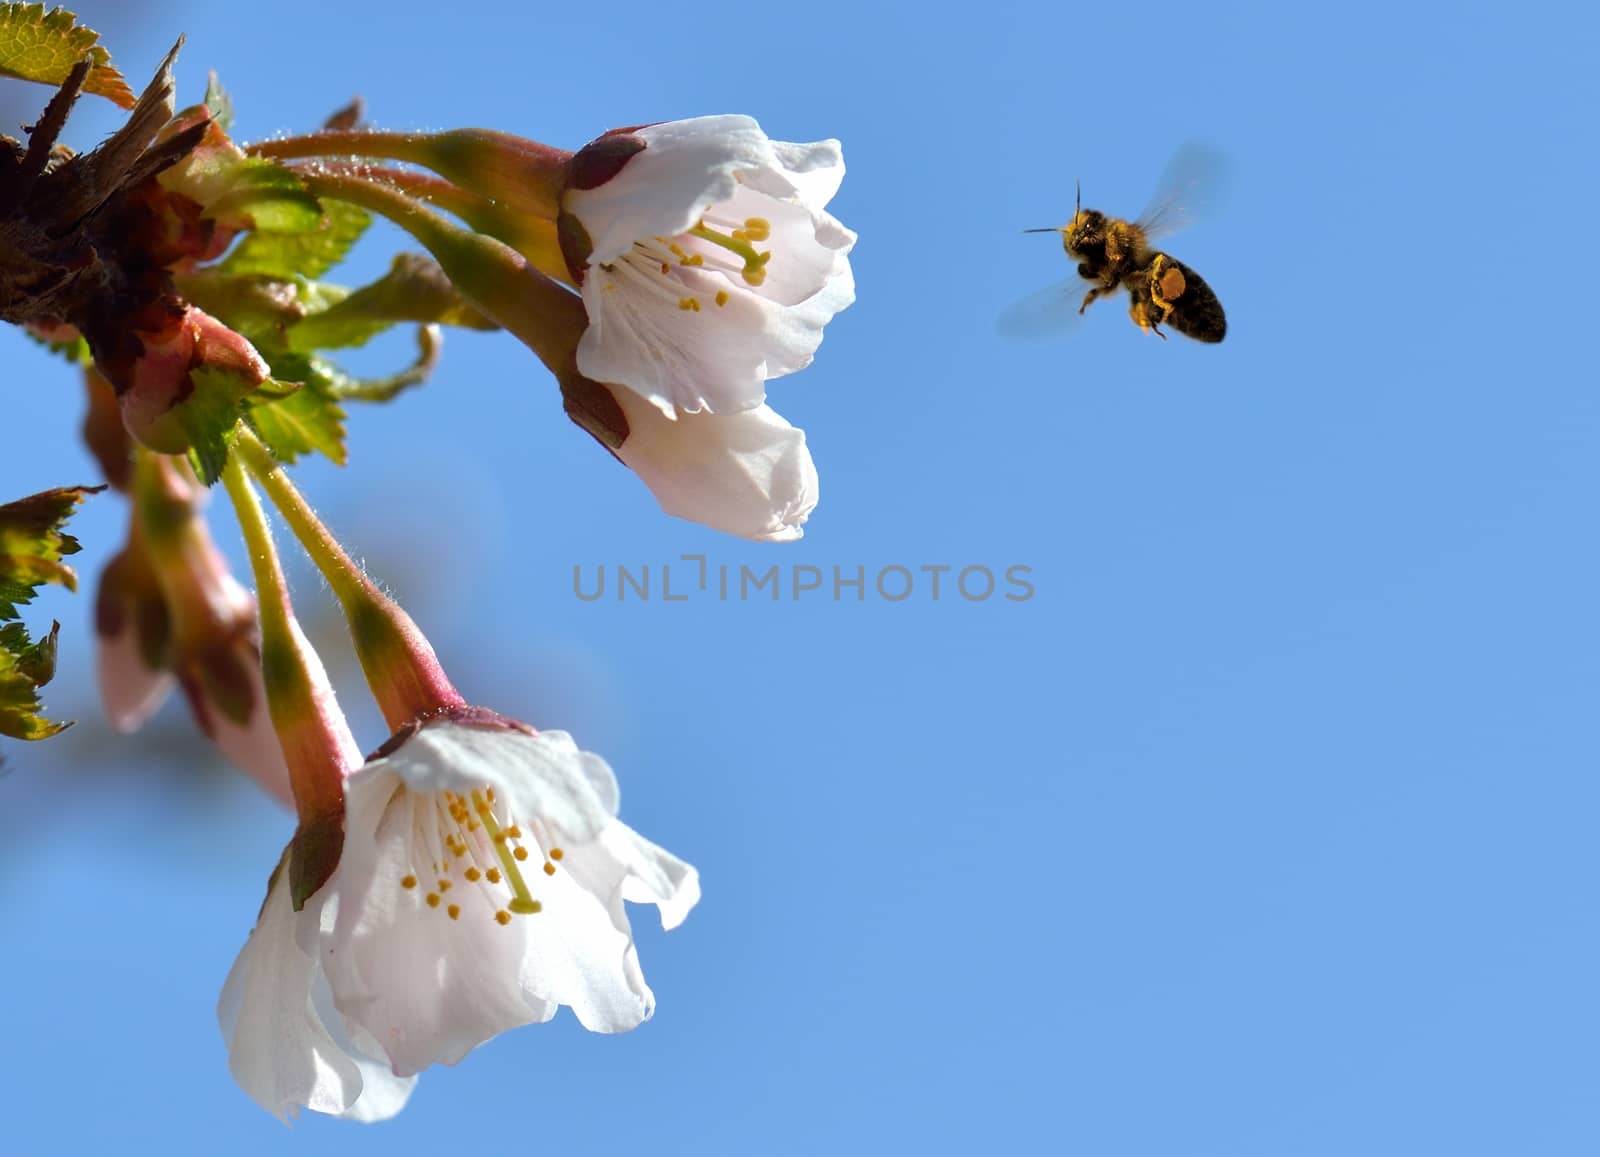 A bee on a flower in flight